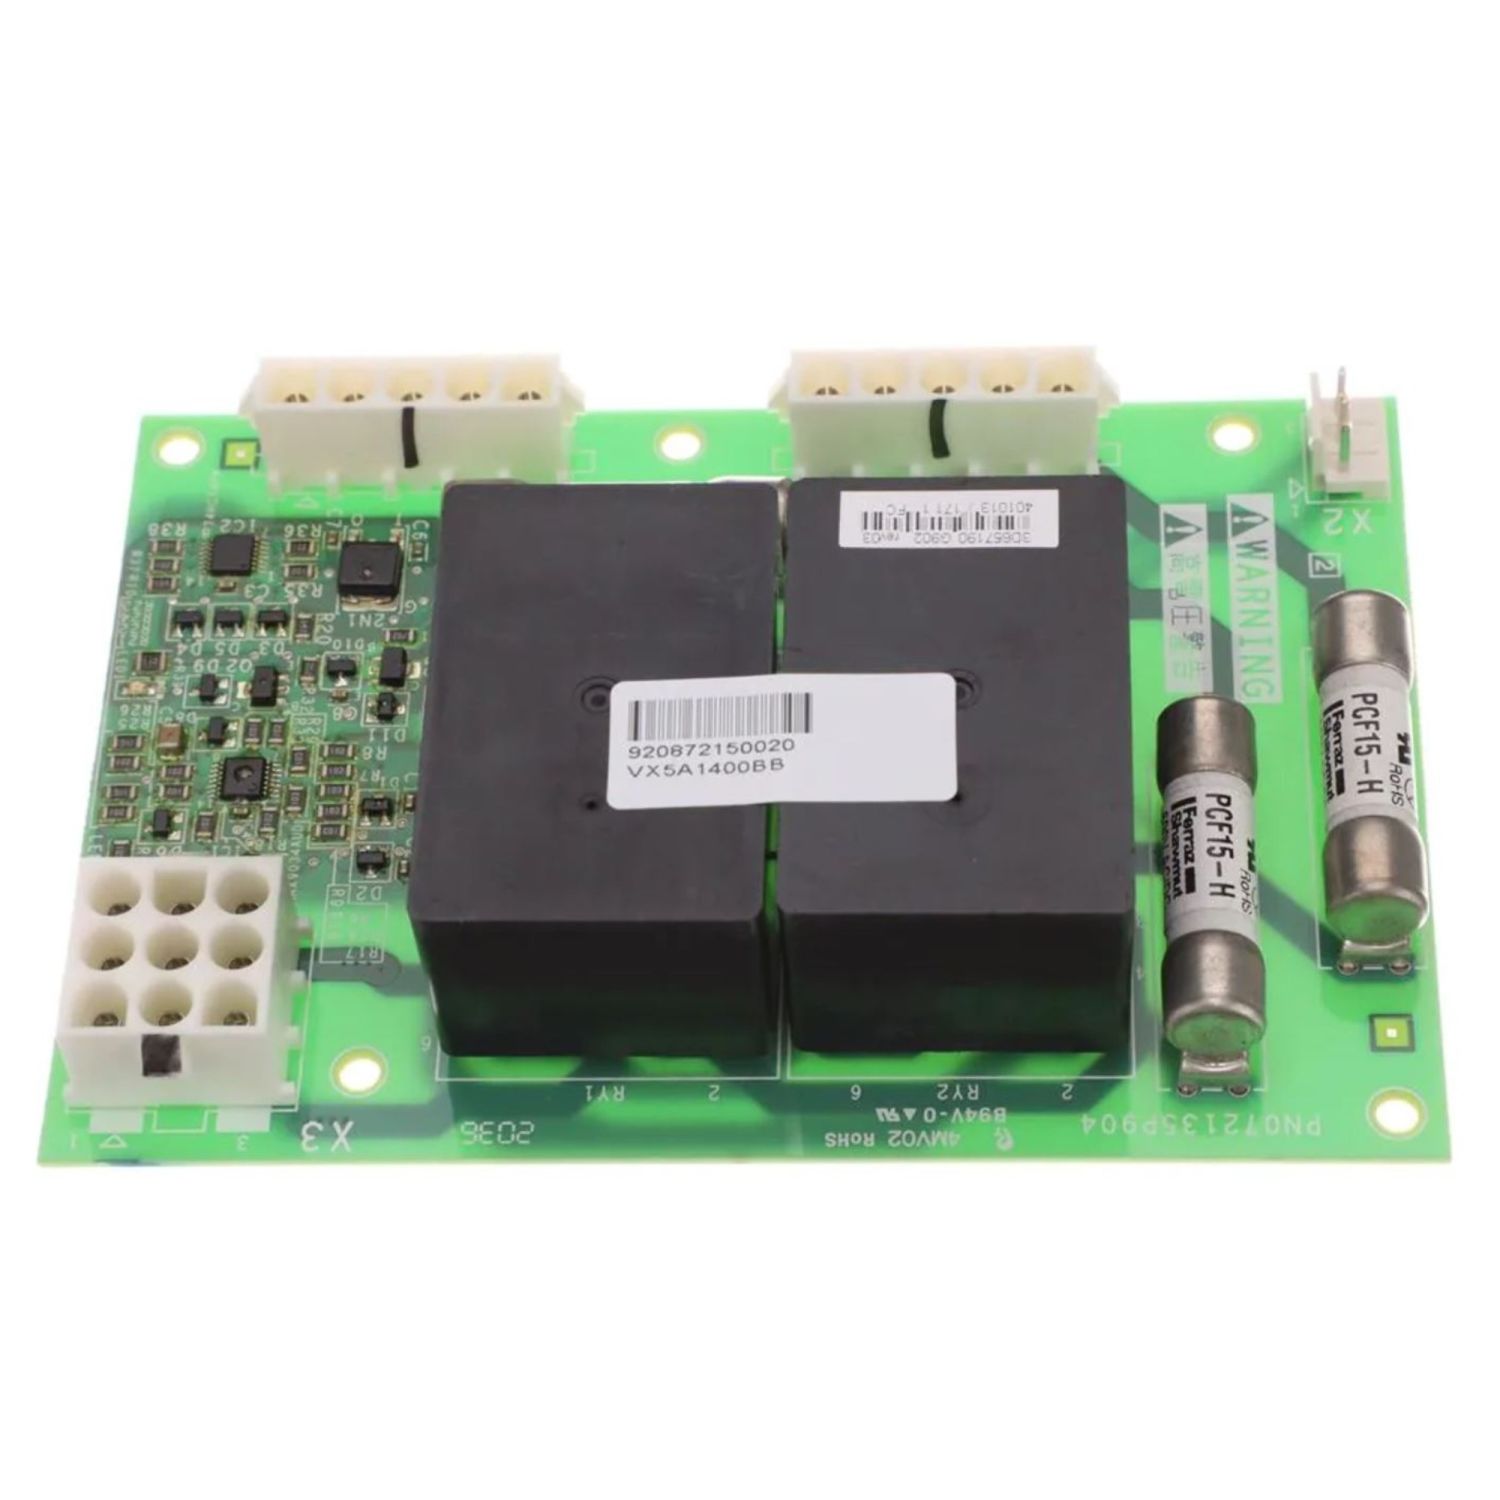 VX5A1400 Fan Control board, Altivar, ATV61/71, spare part, wear part, fan